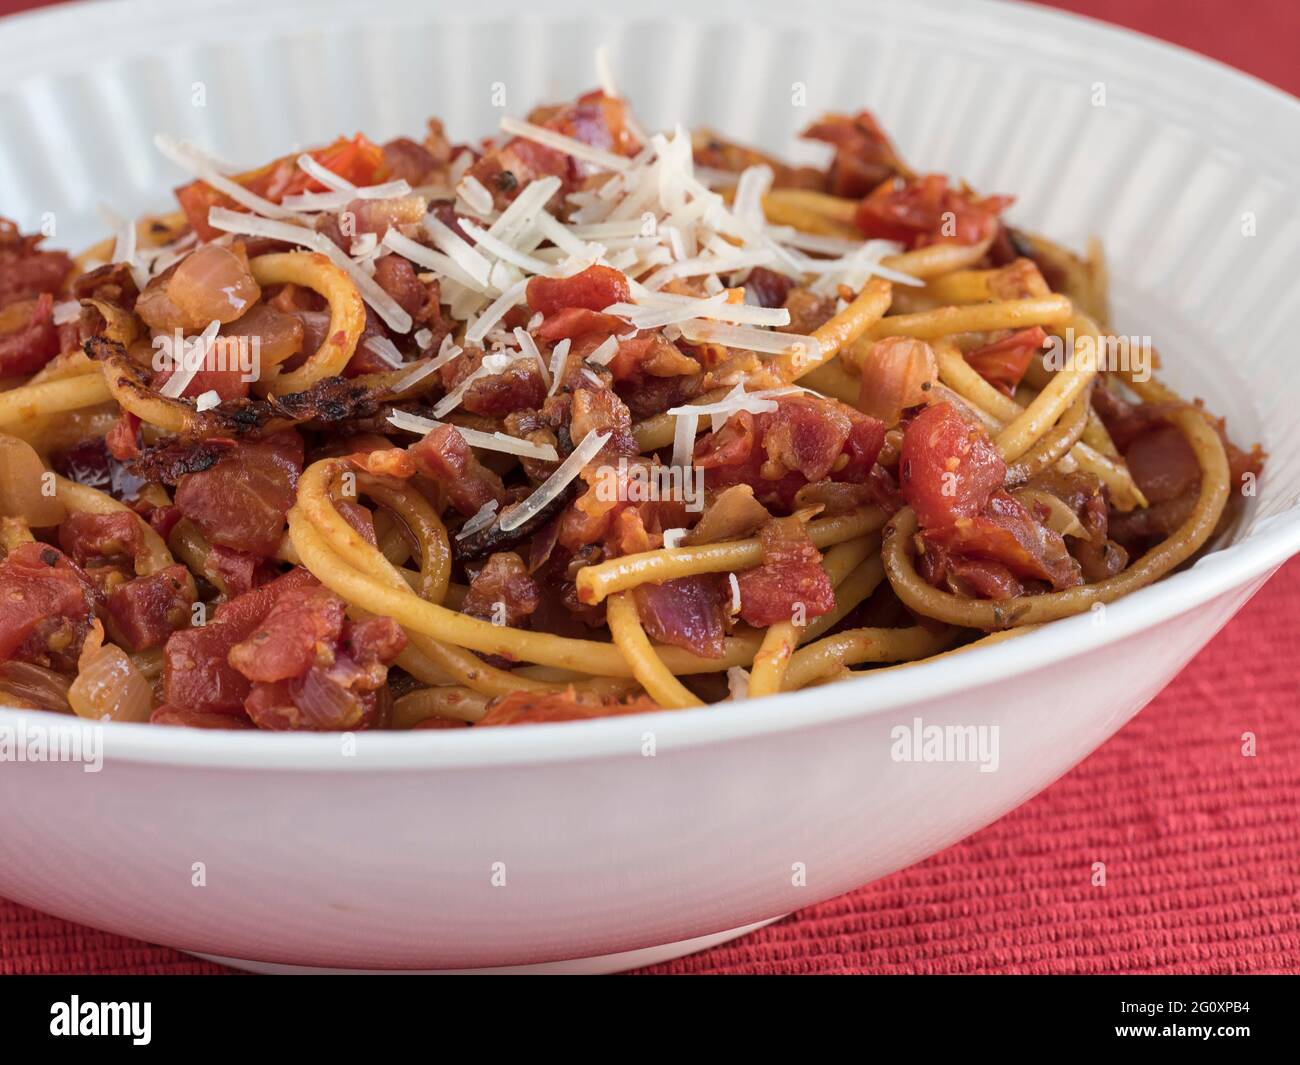 Un plat de service de Bucatini all'Amatriciana, un plat de pâtes italiennes avec pancetta et tomate, recouvert de parmesan, sur une table rouge Banque D'Images